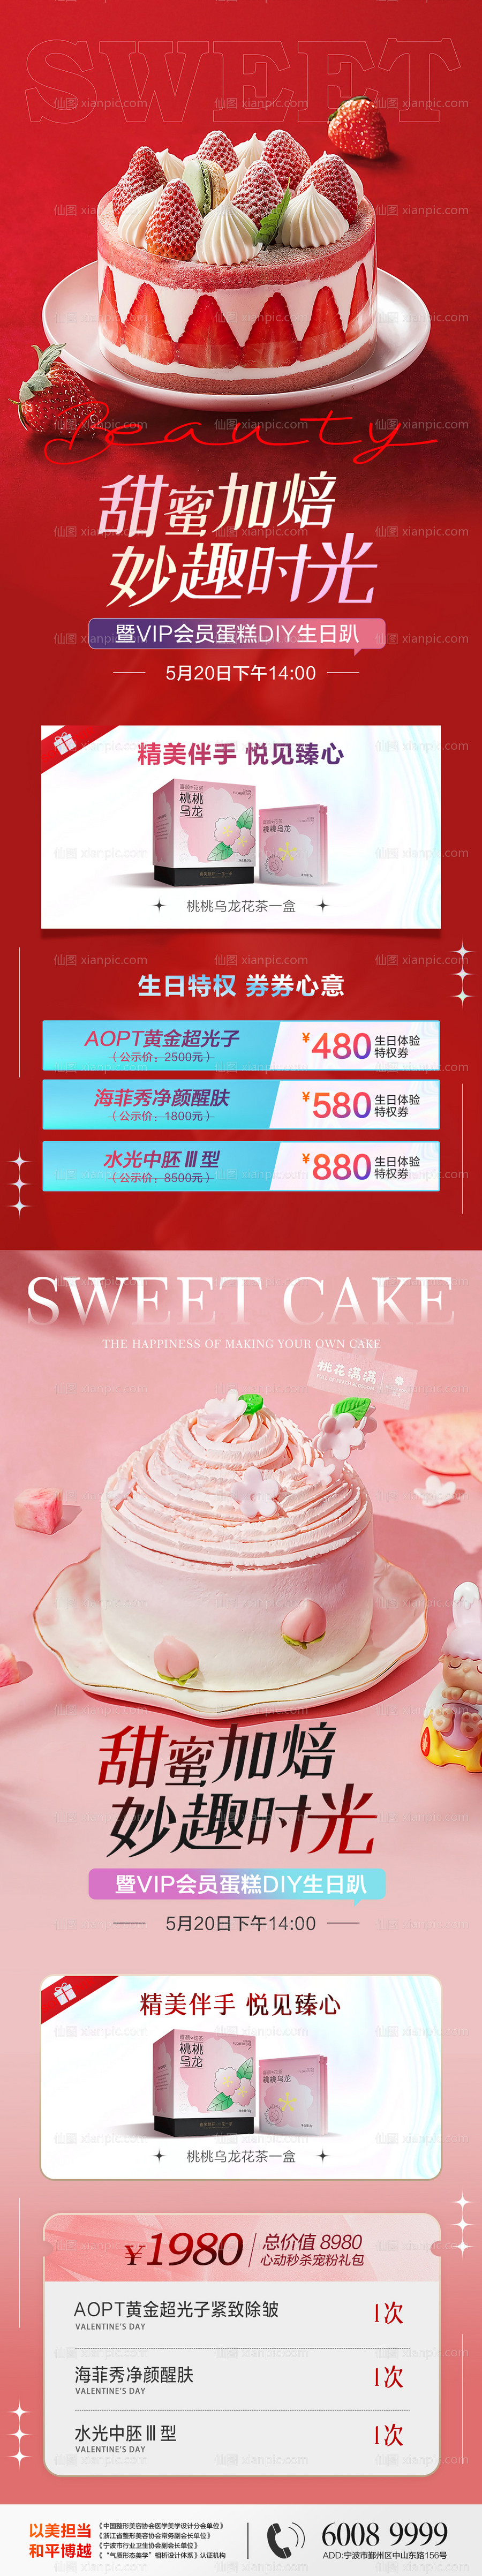 素材乐-医美烘培蛋糕甜品DIY海报